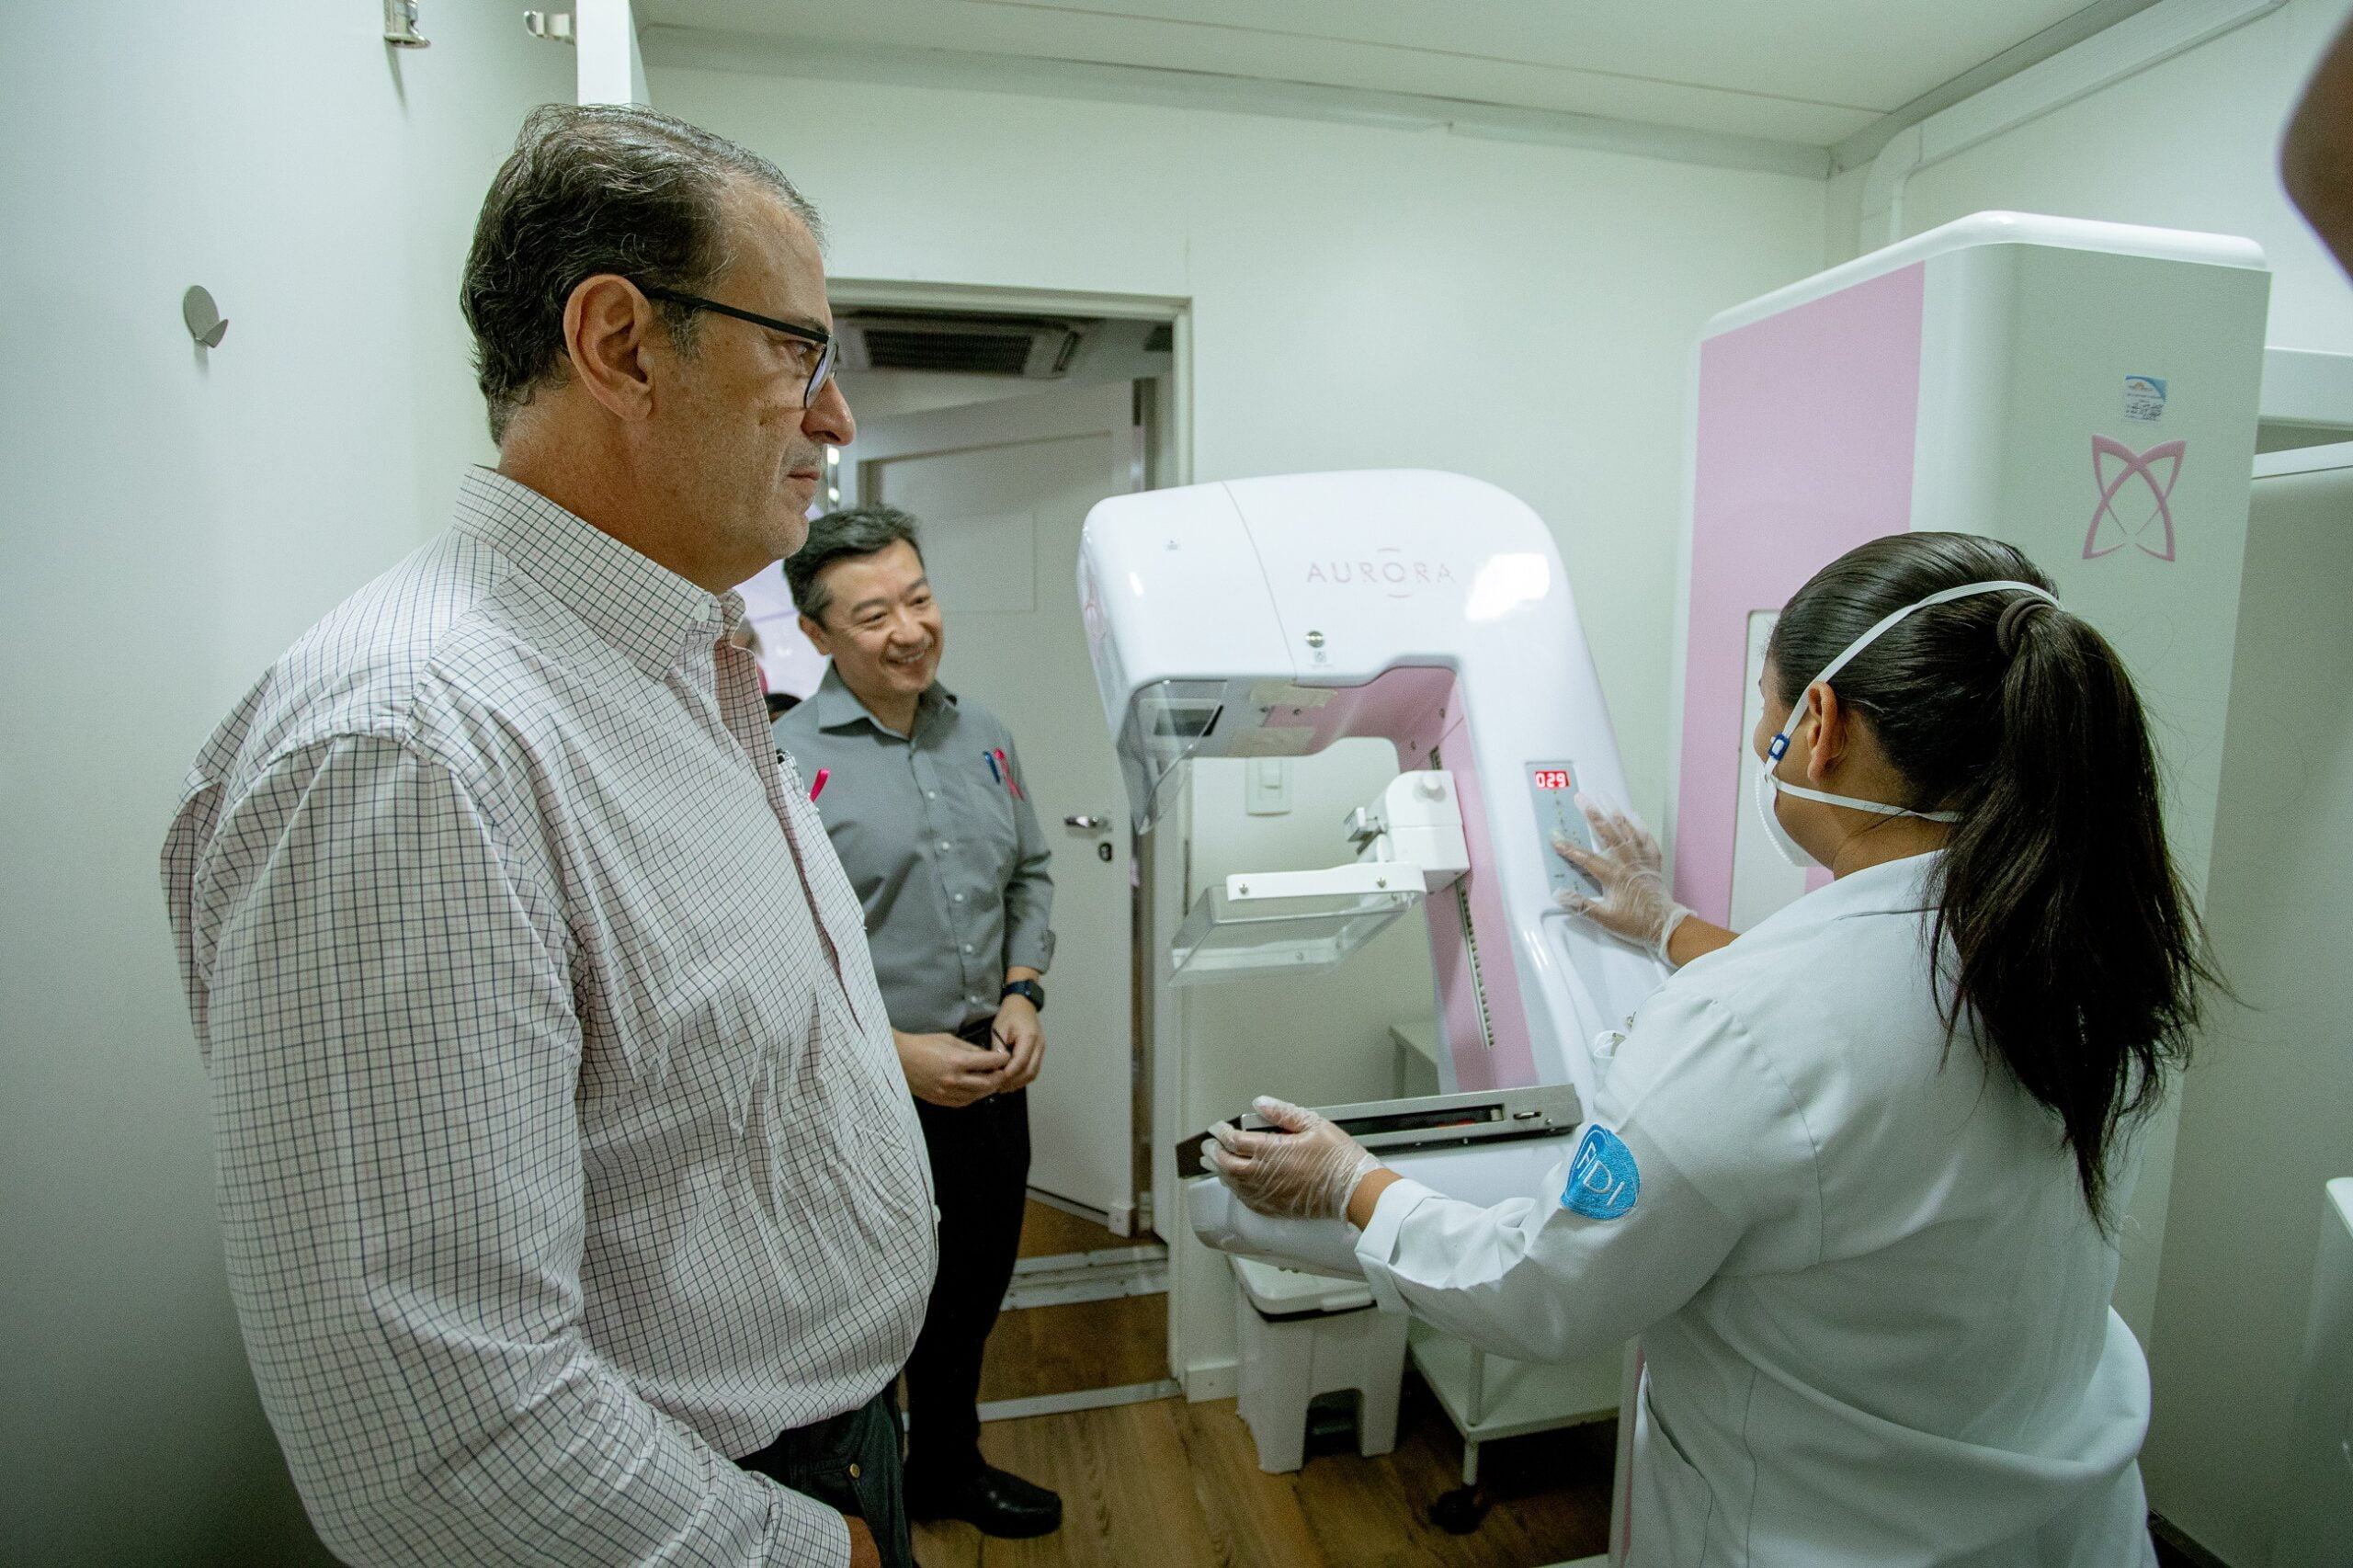 Luciano Almeida e Douglas Koga conheceram as intalações da Carreta que oferecem exames de prevenção e rastreio para o câncer de mama